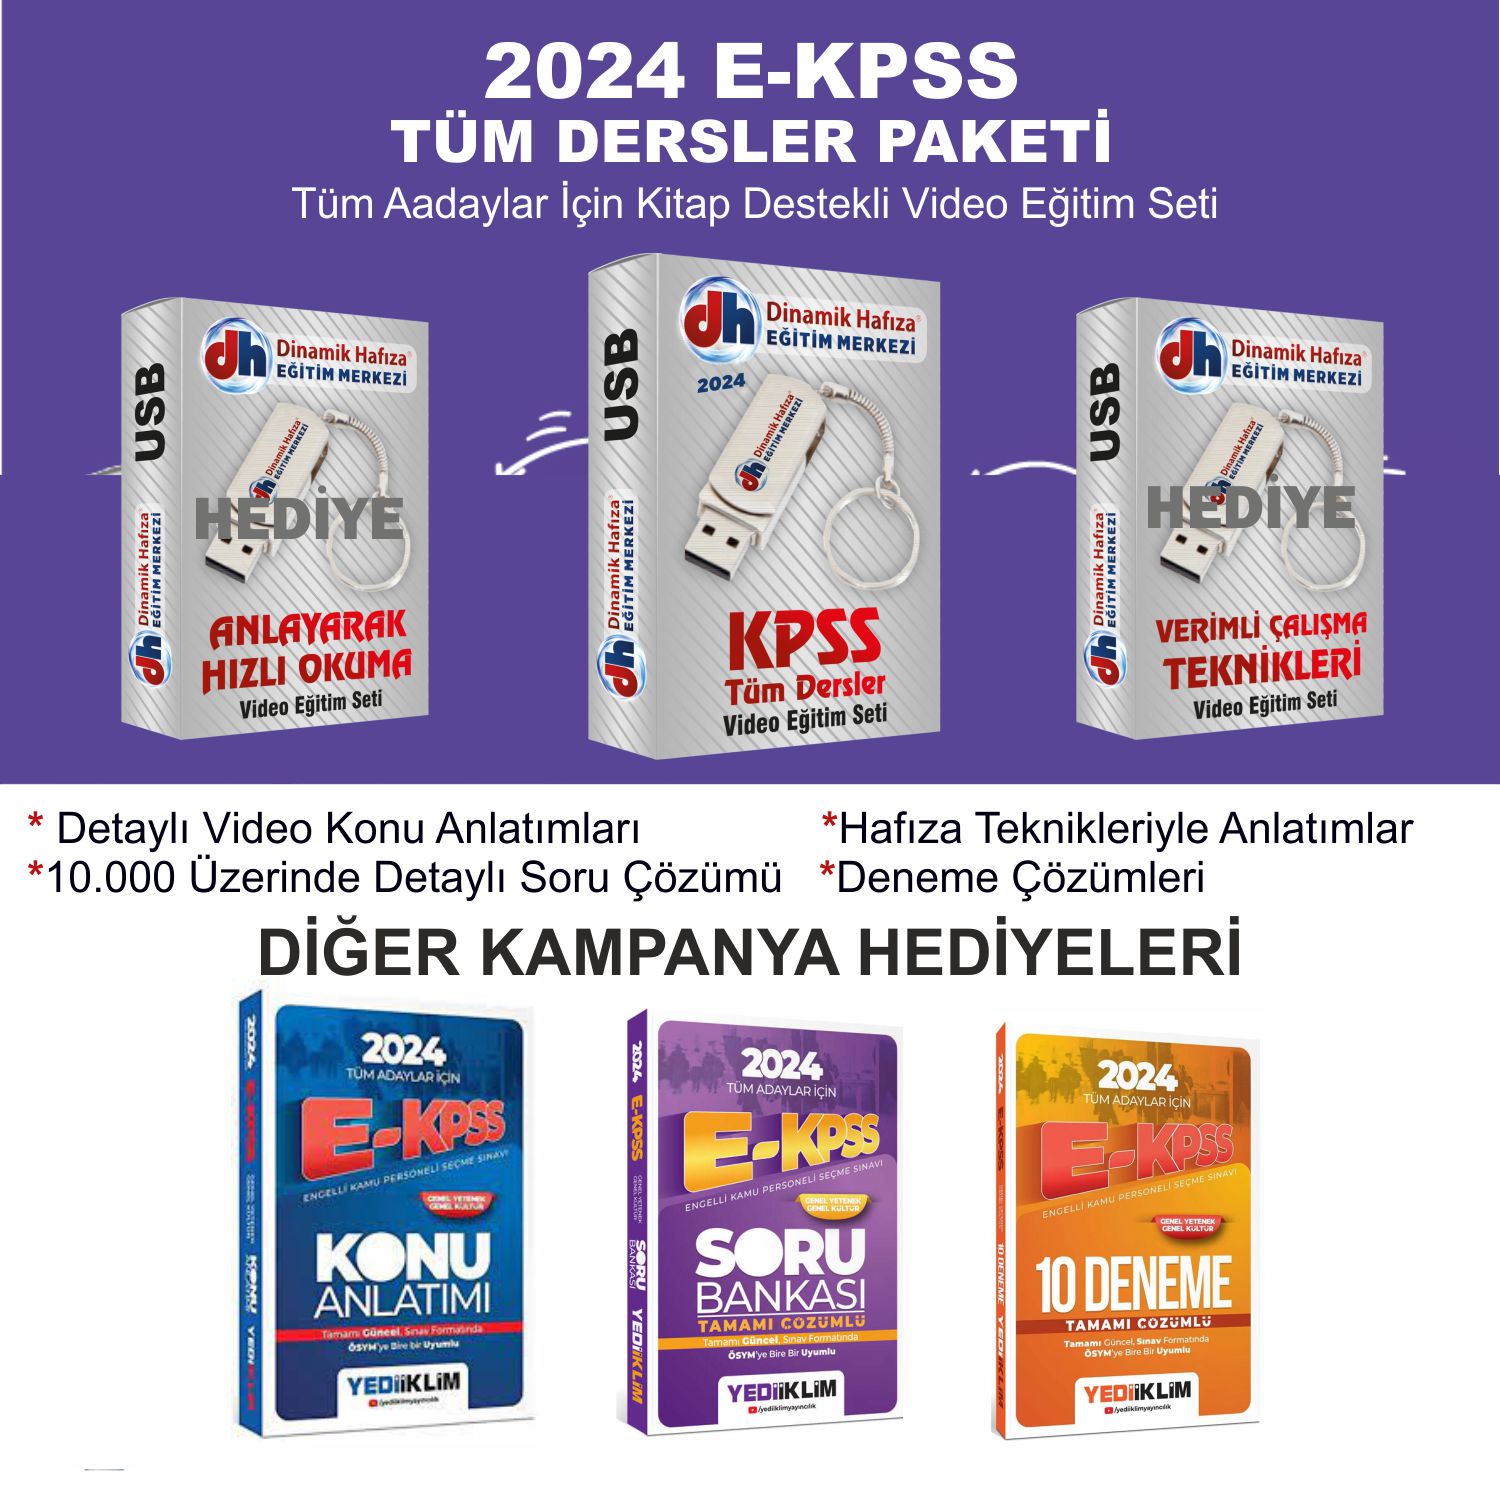 2024 E-KPSS Mega  Paket